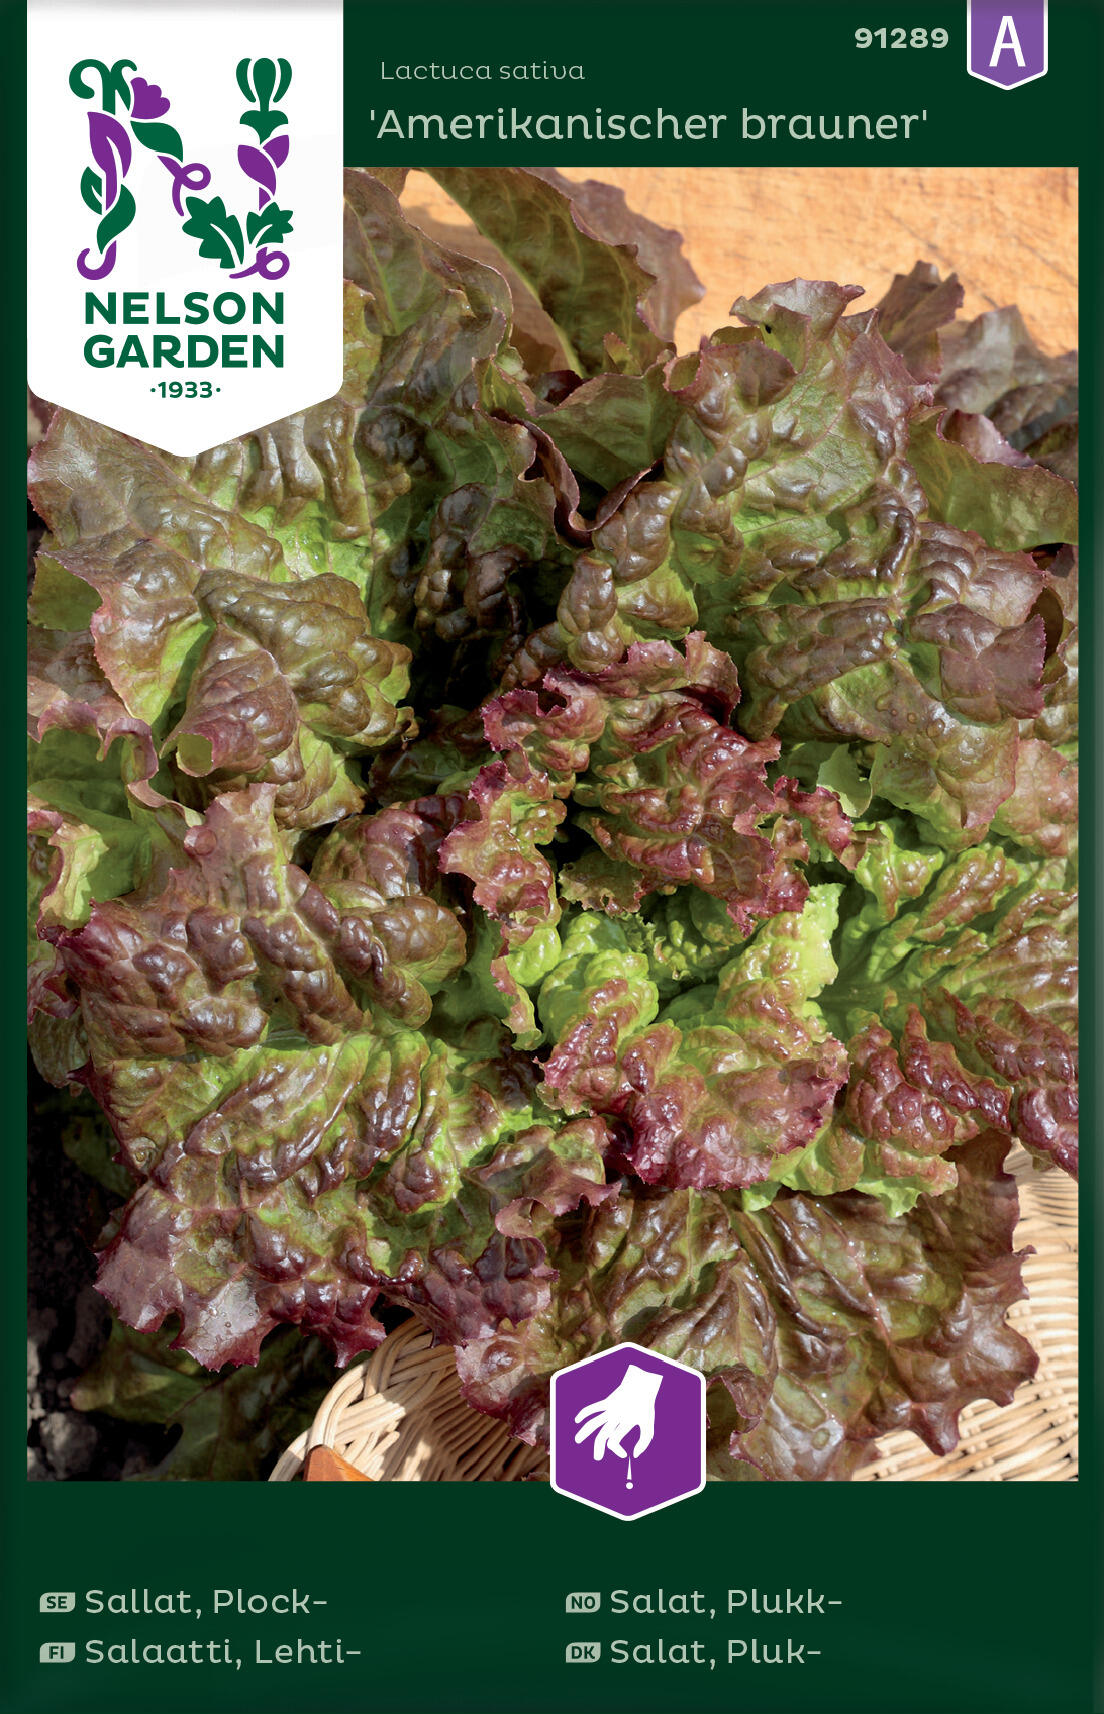 Lehtisalaatti siemenet, Amerikanischer brauner - Nelson Garden 91289 A